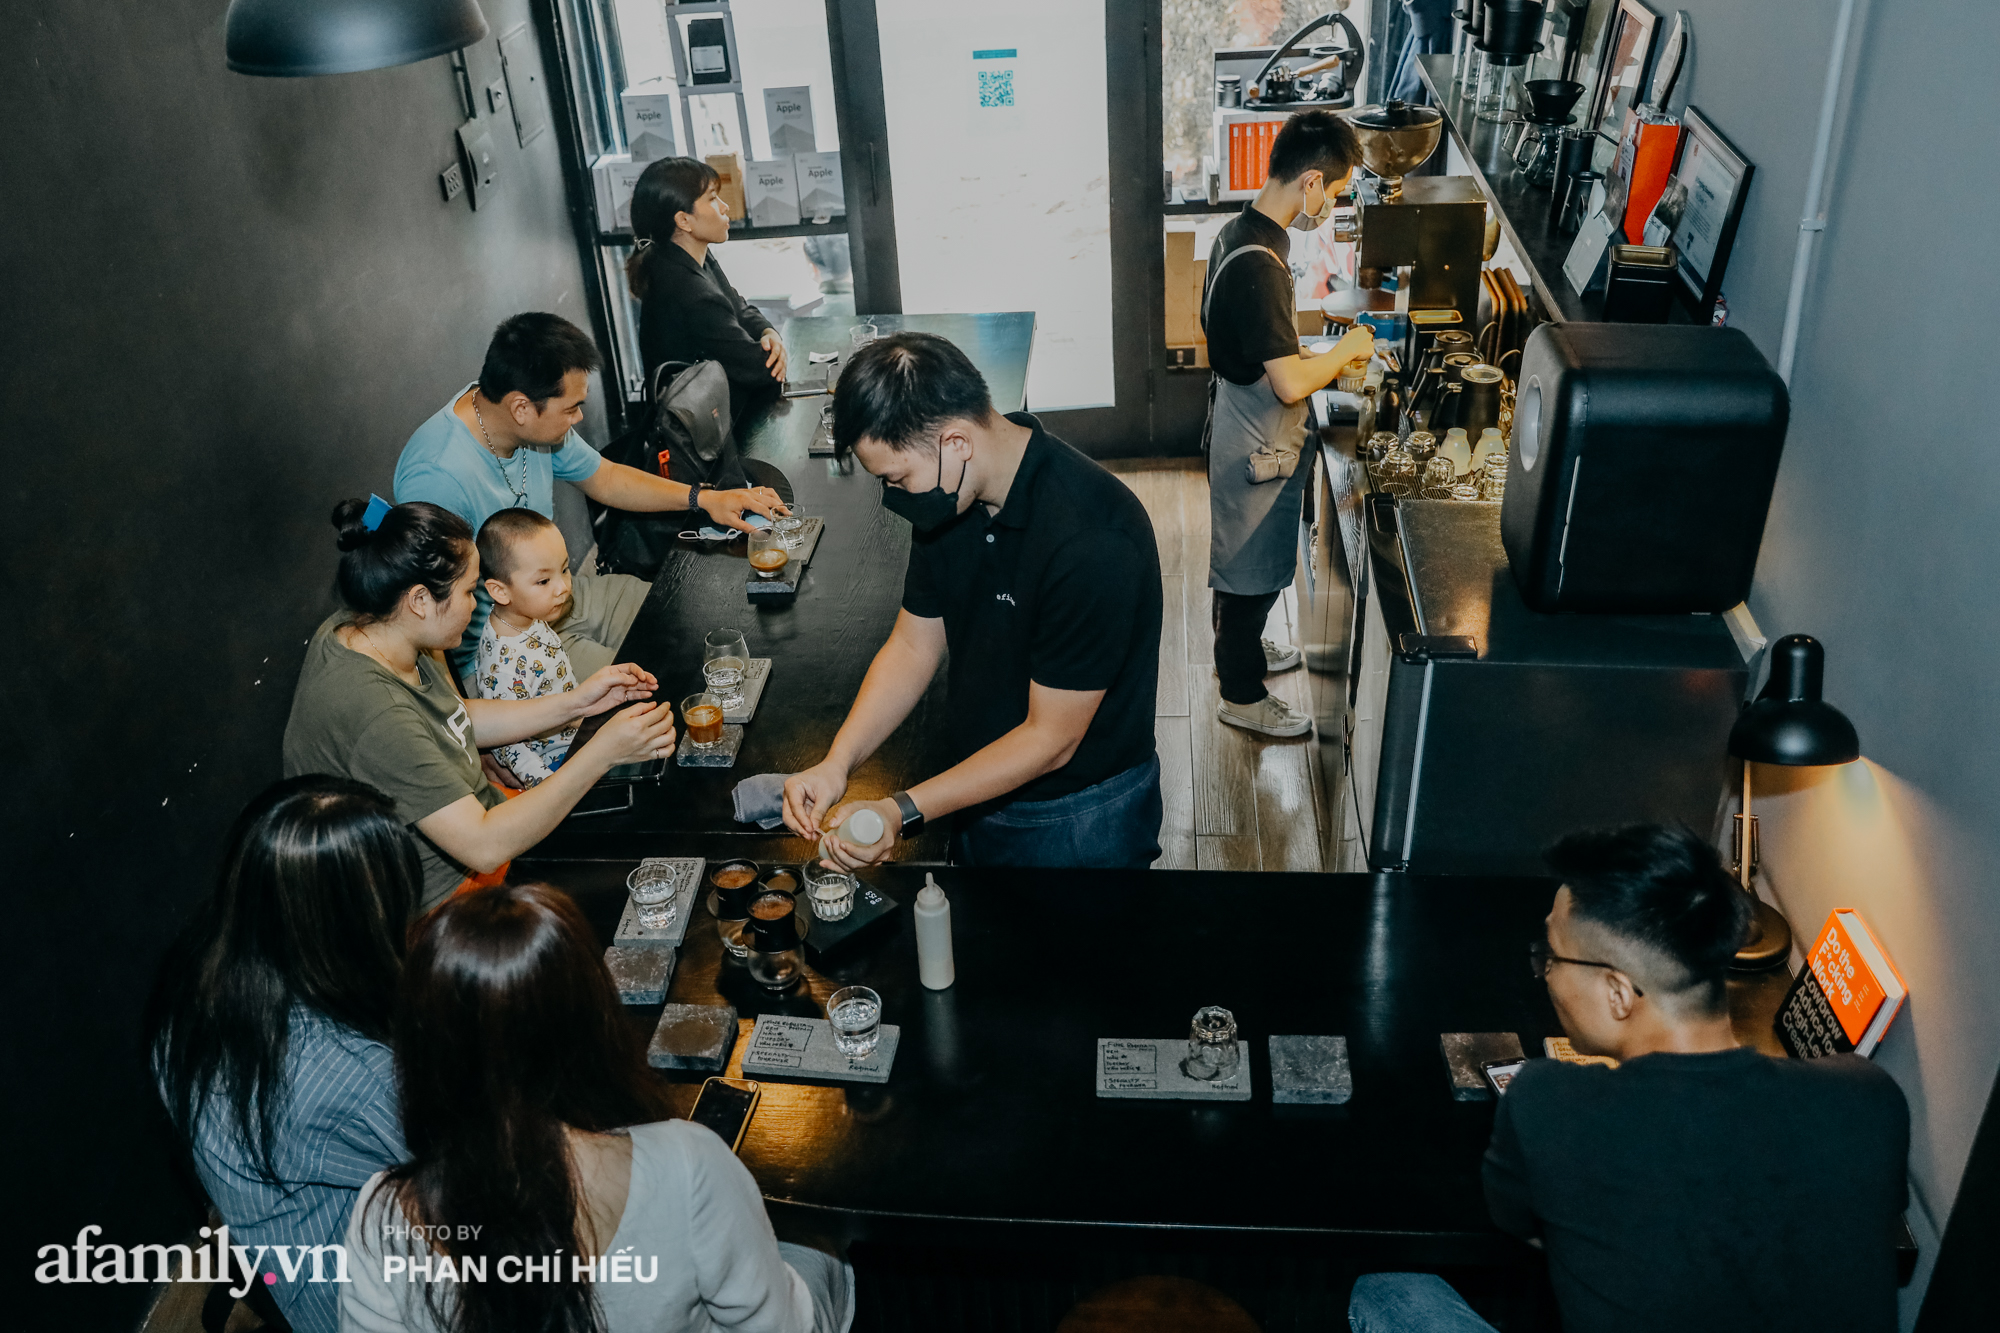 Quán cà phê trả tiền "tùy tâm trạng" ngay trên phố Văn Miếu, gồm 2 nhân viên với vỏn vẹn 8 chỗ ngồi - Ảnh 4.